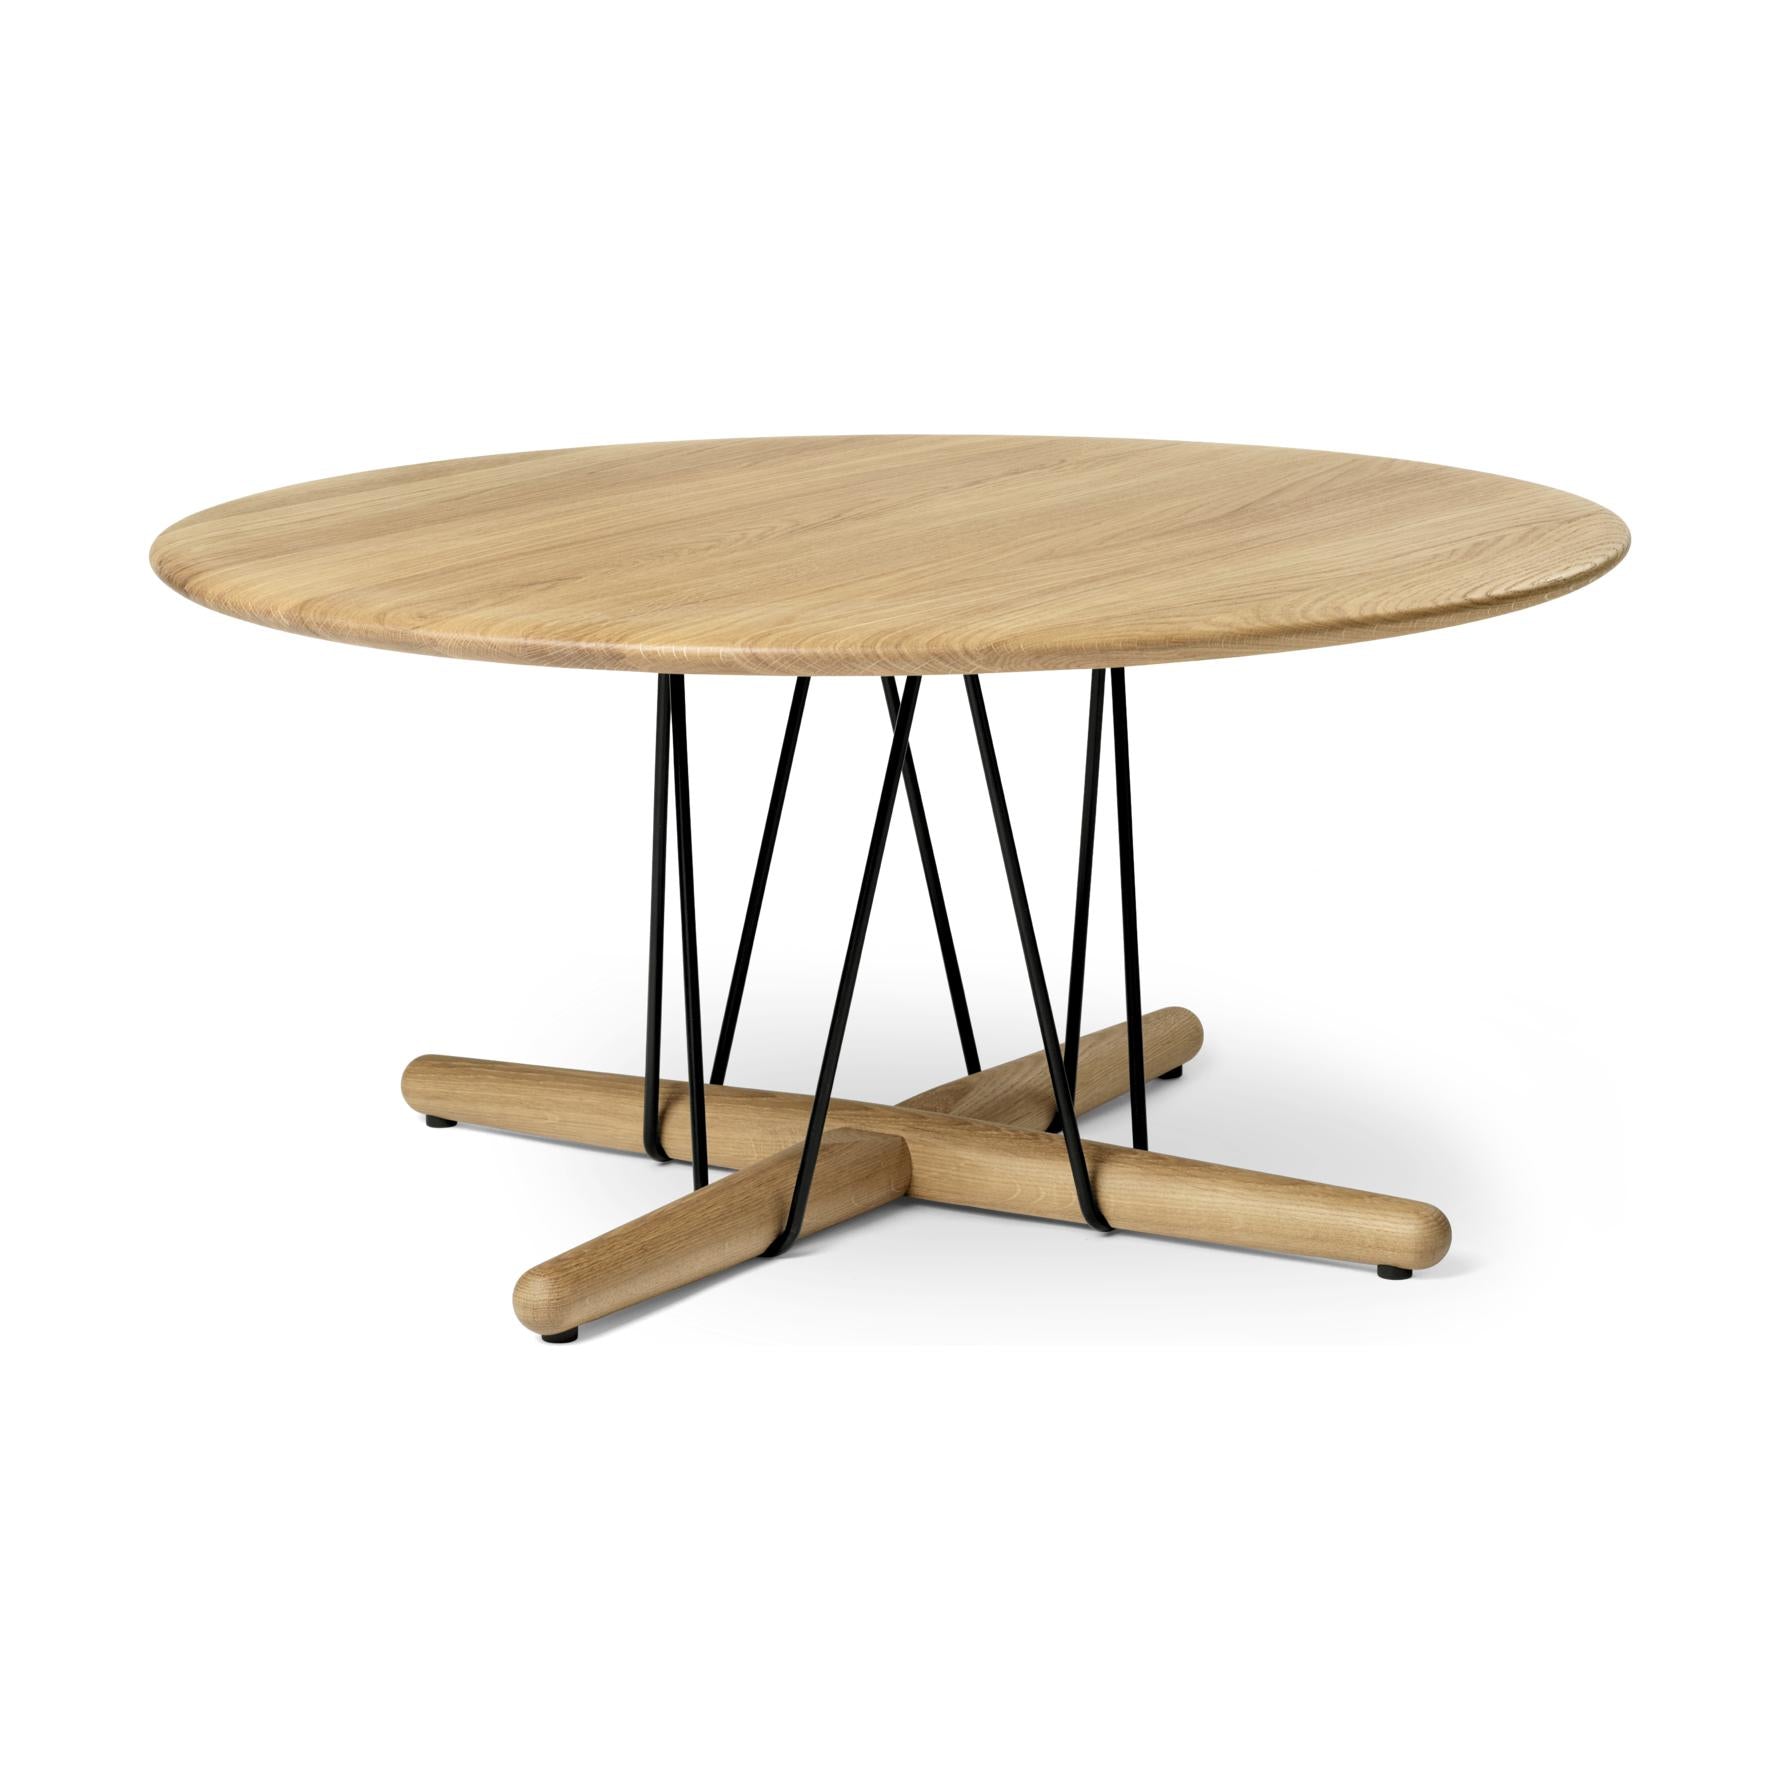 Carl Hansen E021 Embrace Salle Table, naoliwiony dąb, Ø 80 cm